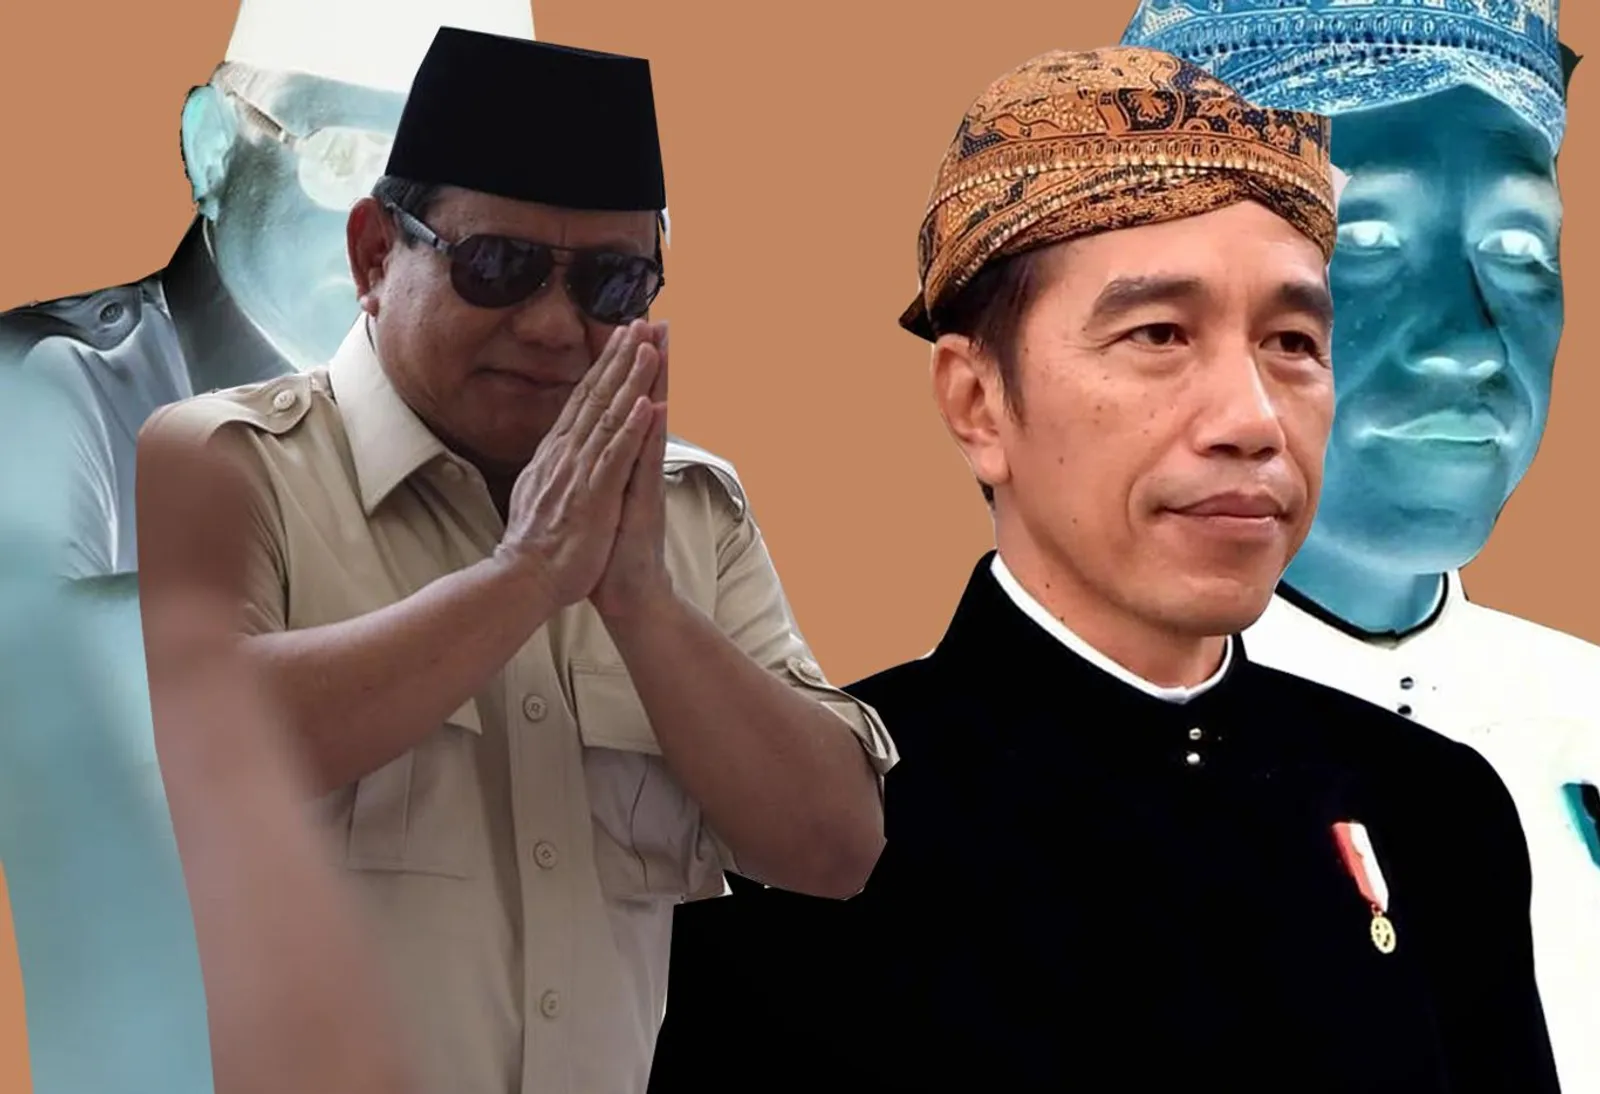 Debat Usai, Jokowi Bilang Anti Kekerasan, Prabowo Janji Jaga Kekayaan 